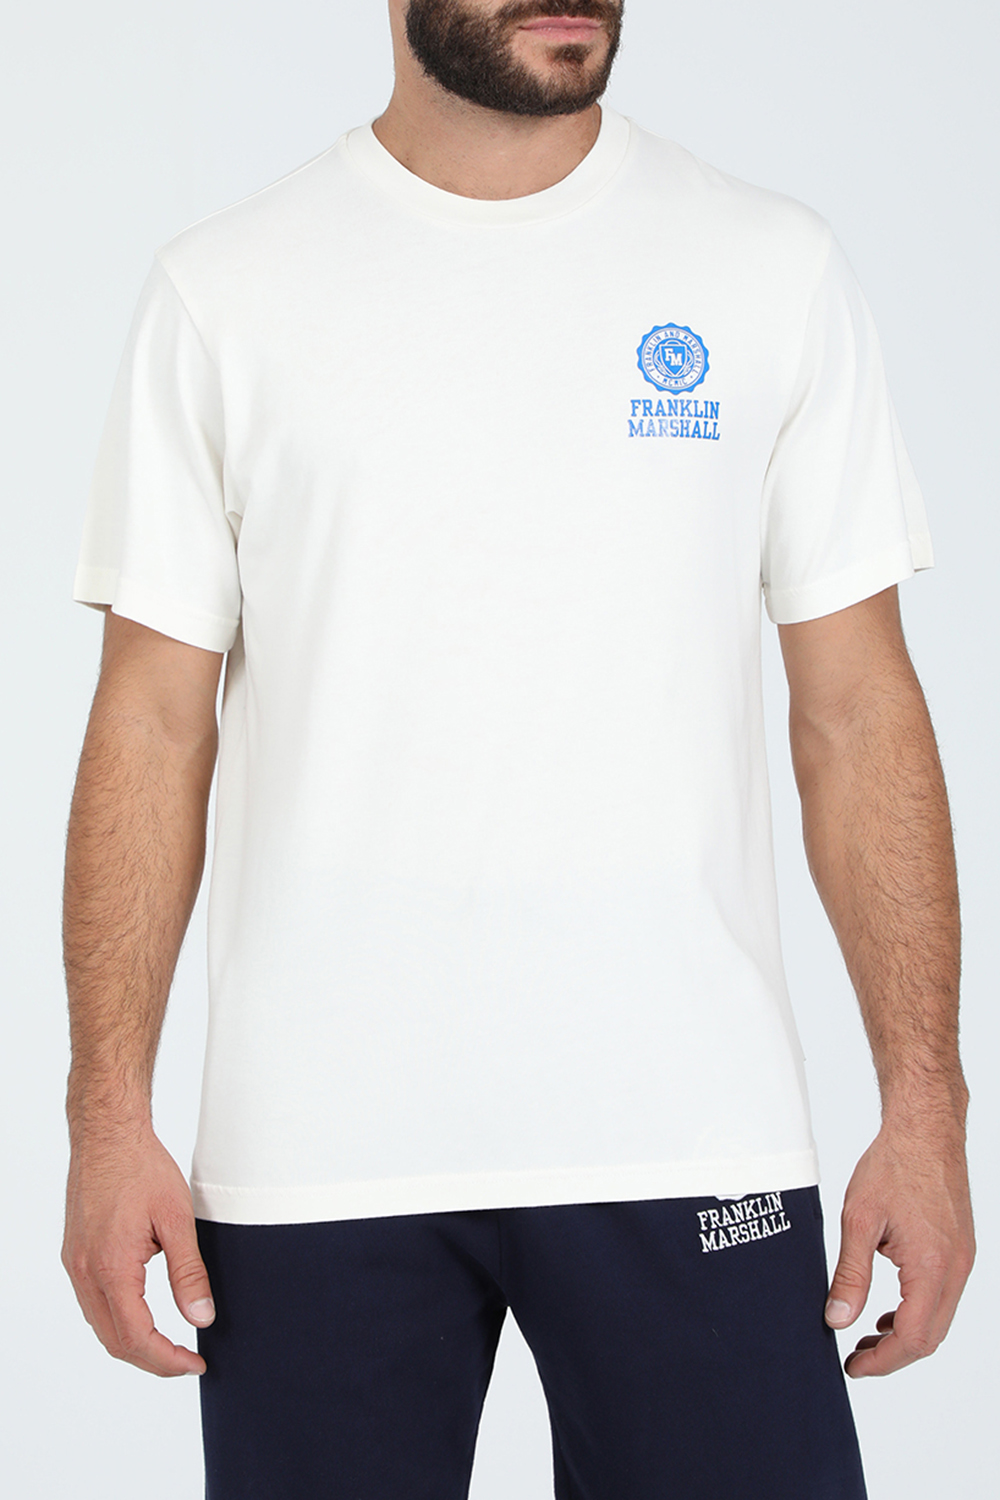 Ανδρικά/Ρούχα/Μπλούζες/Κοντομάνικες FRANKLIN & MARSHALL - Ανδρικό t-shirt FRANKLIN & MARSHALL λευκό